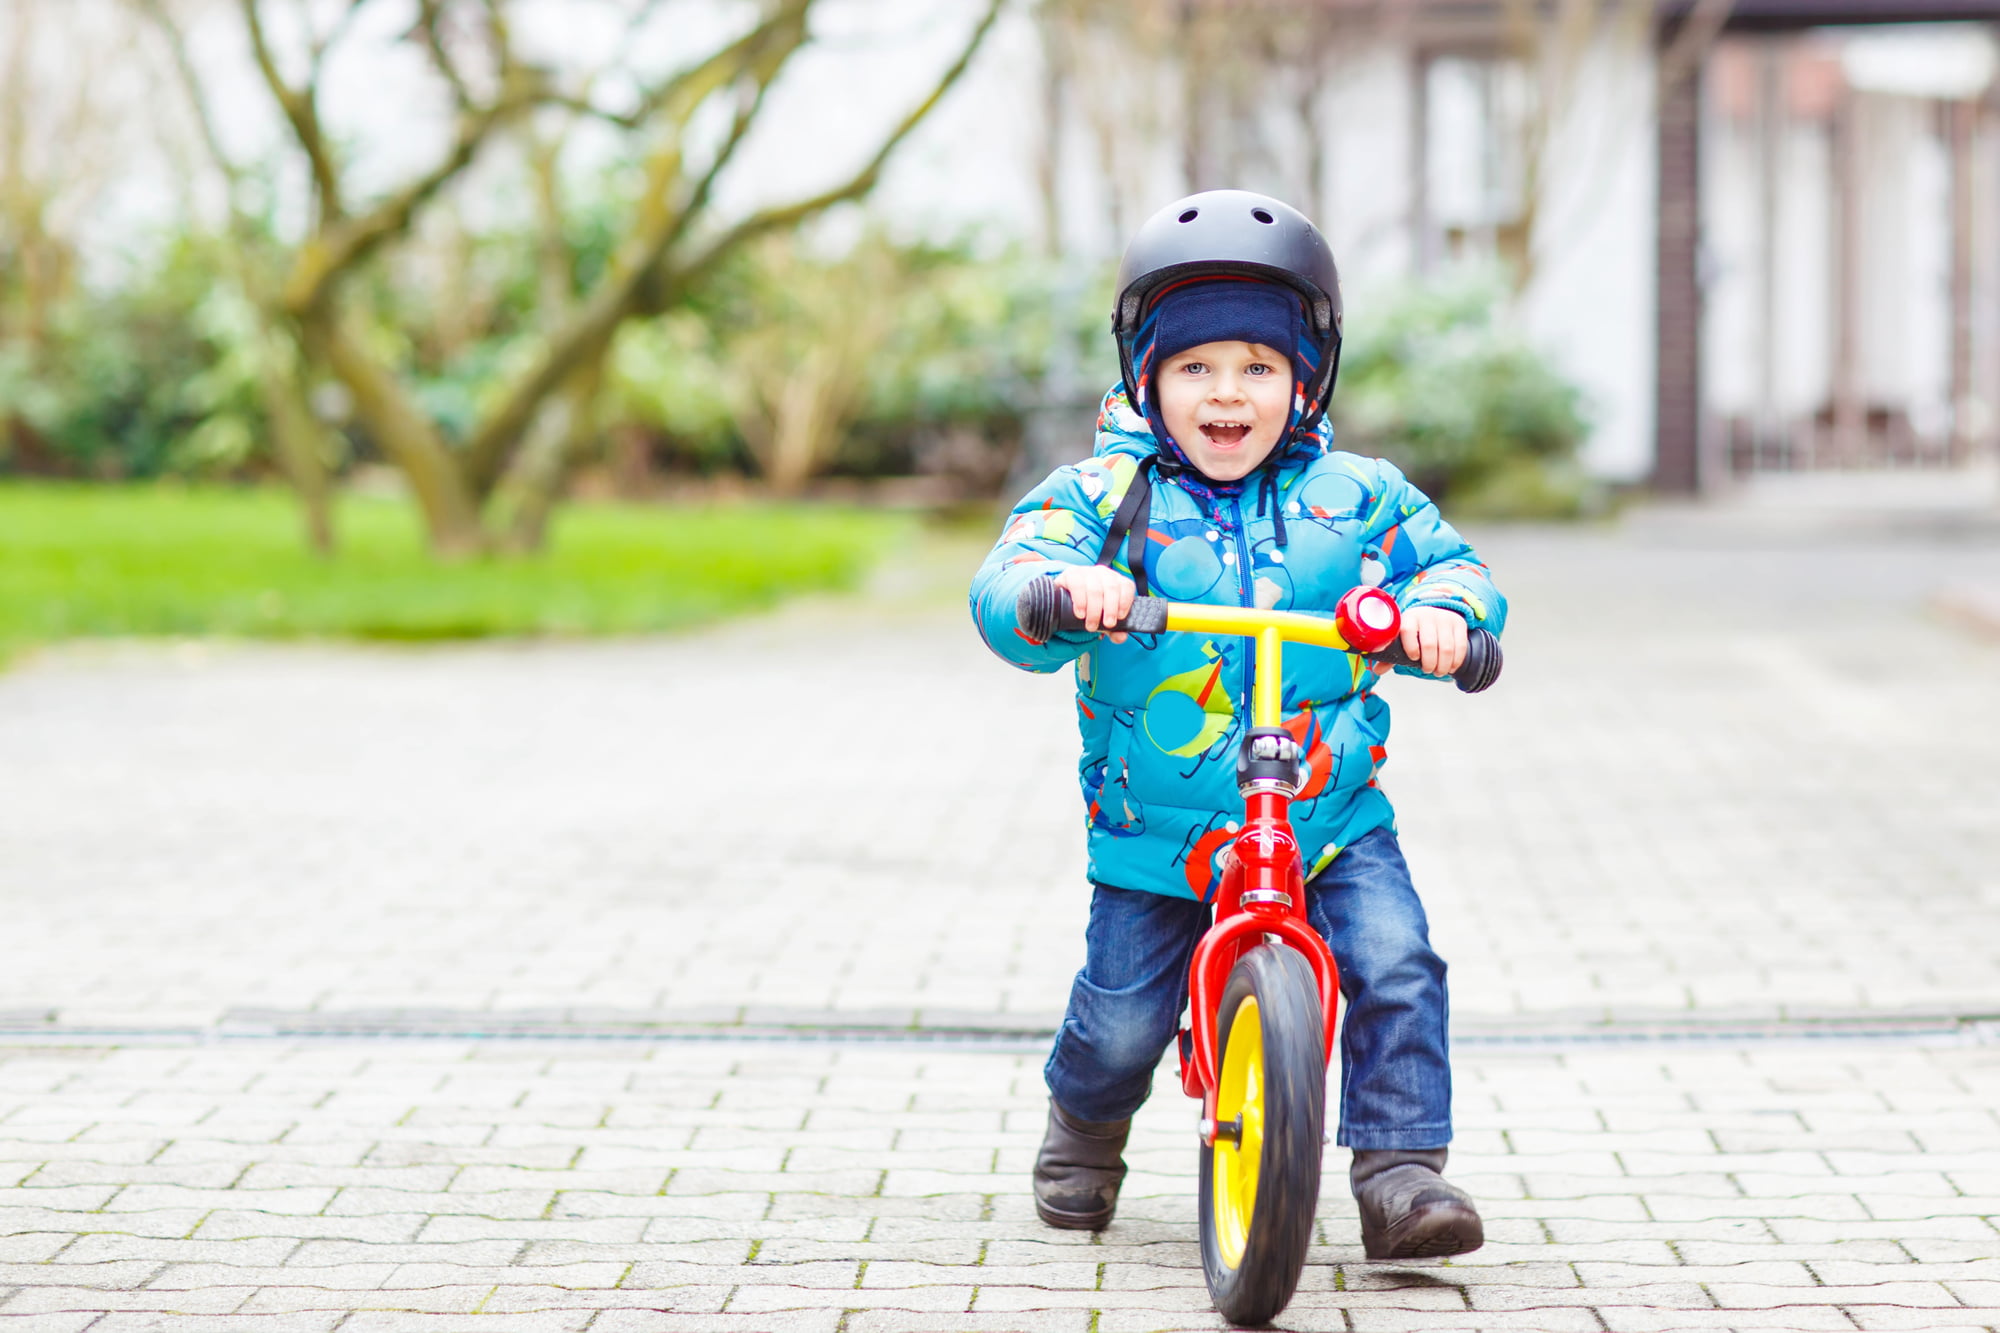 Løbecykel • De 9 bedste løbecykler 1-4 årige i test